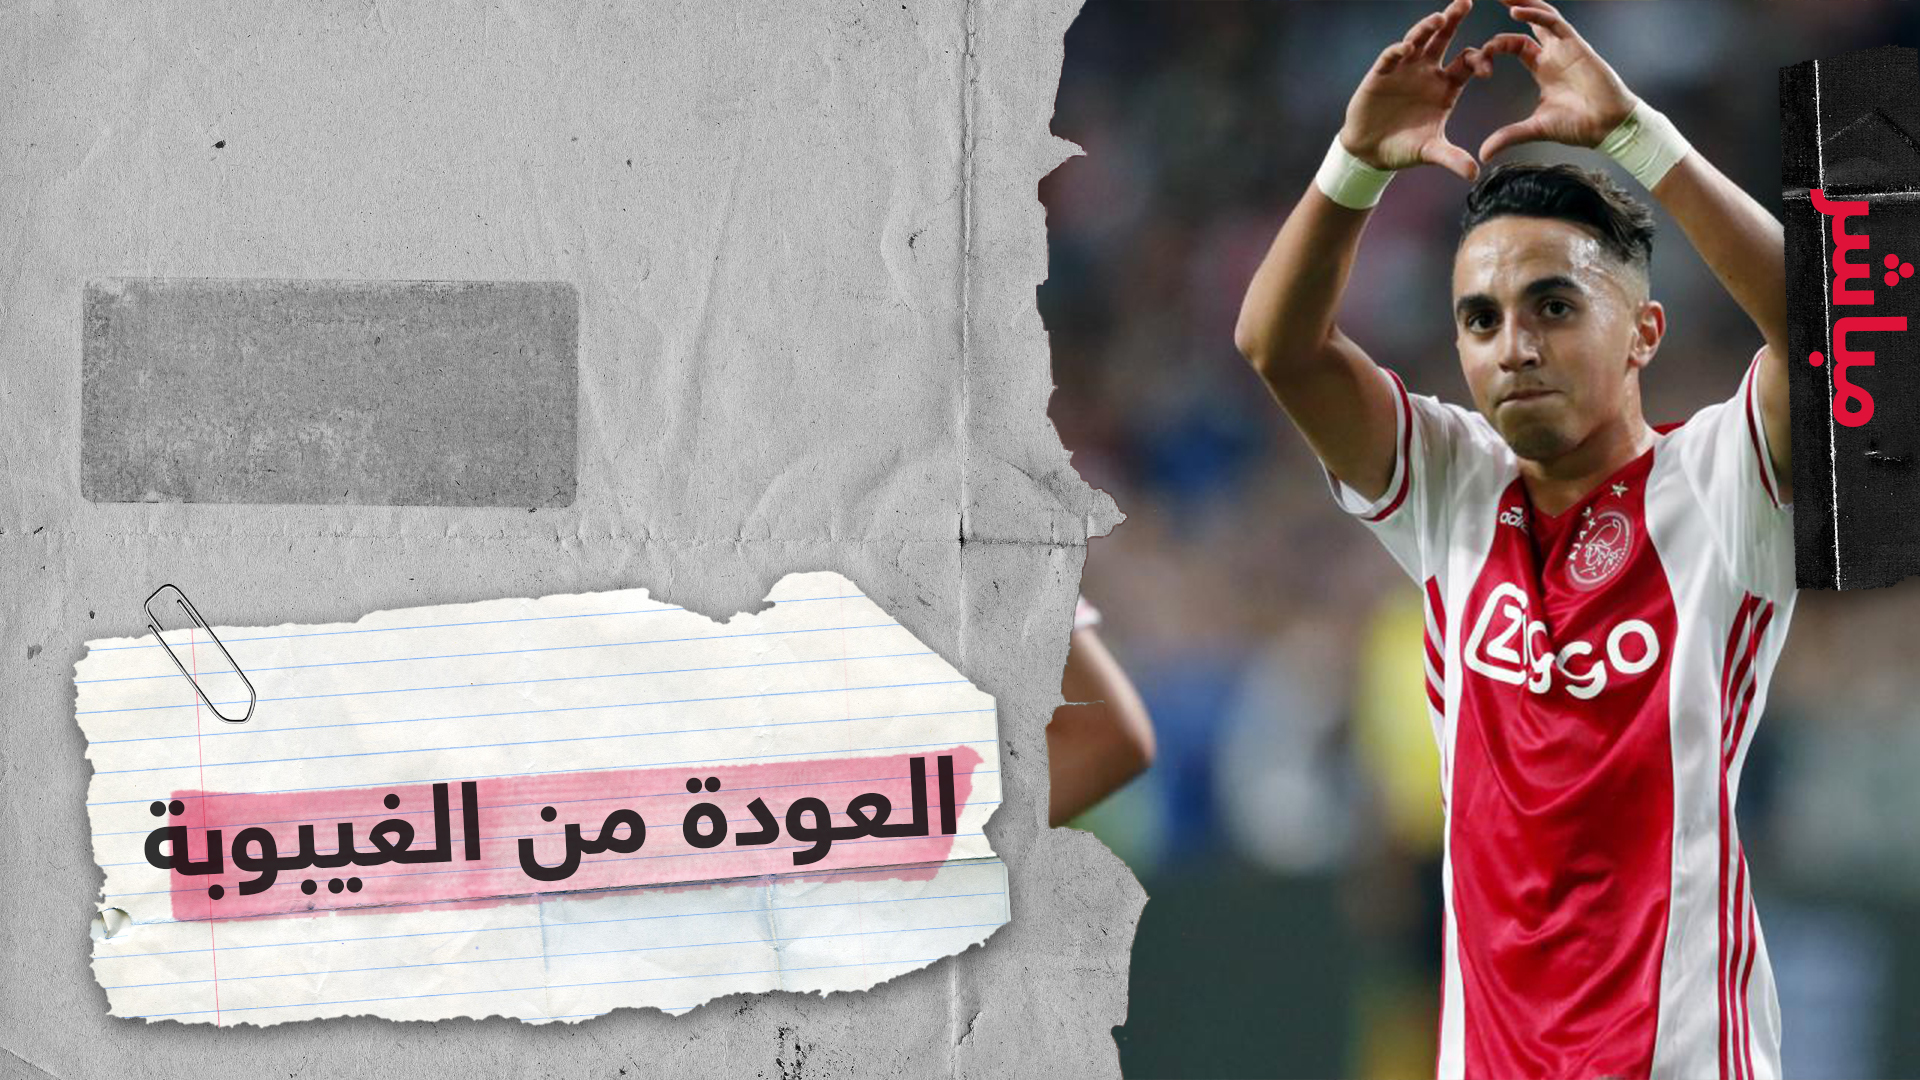 عبد الحق نوري لاعب أياكس أمستردام يخرج من غيبوبته